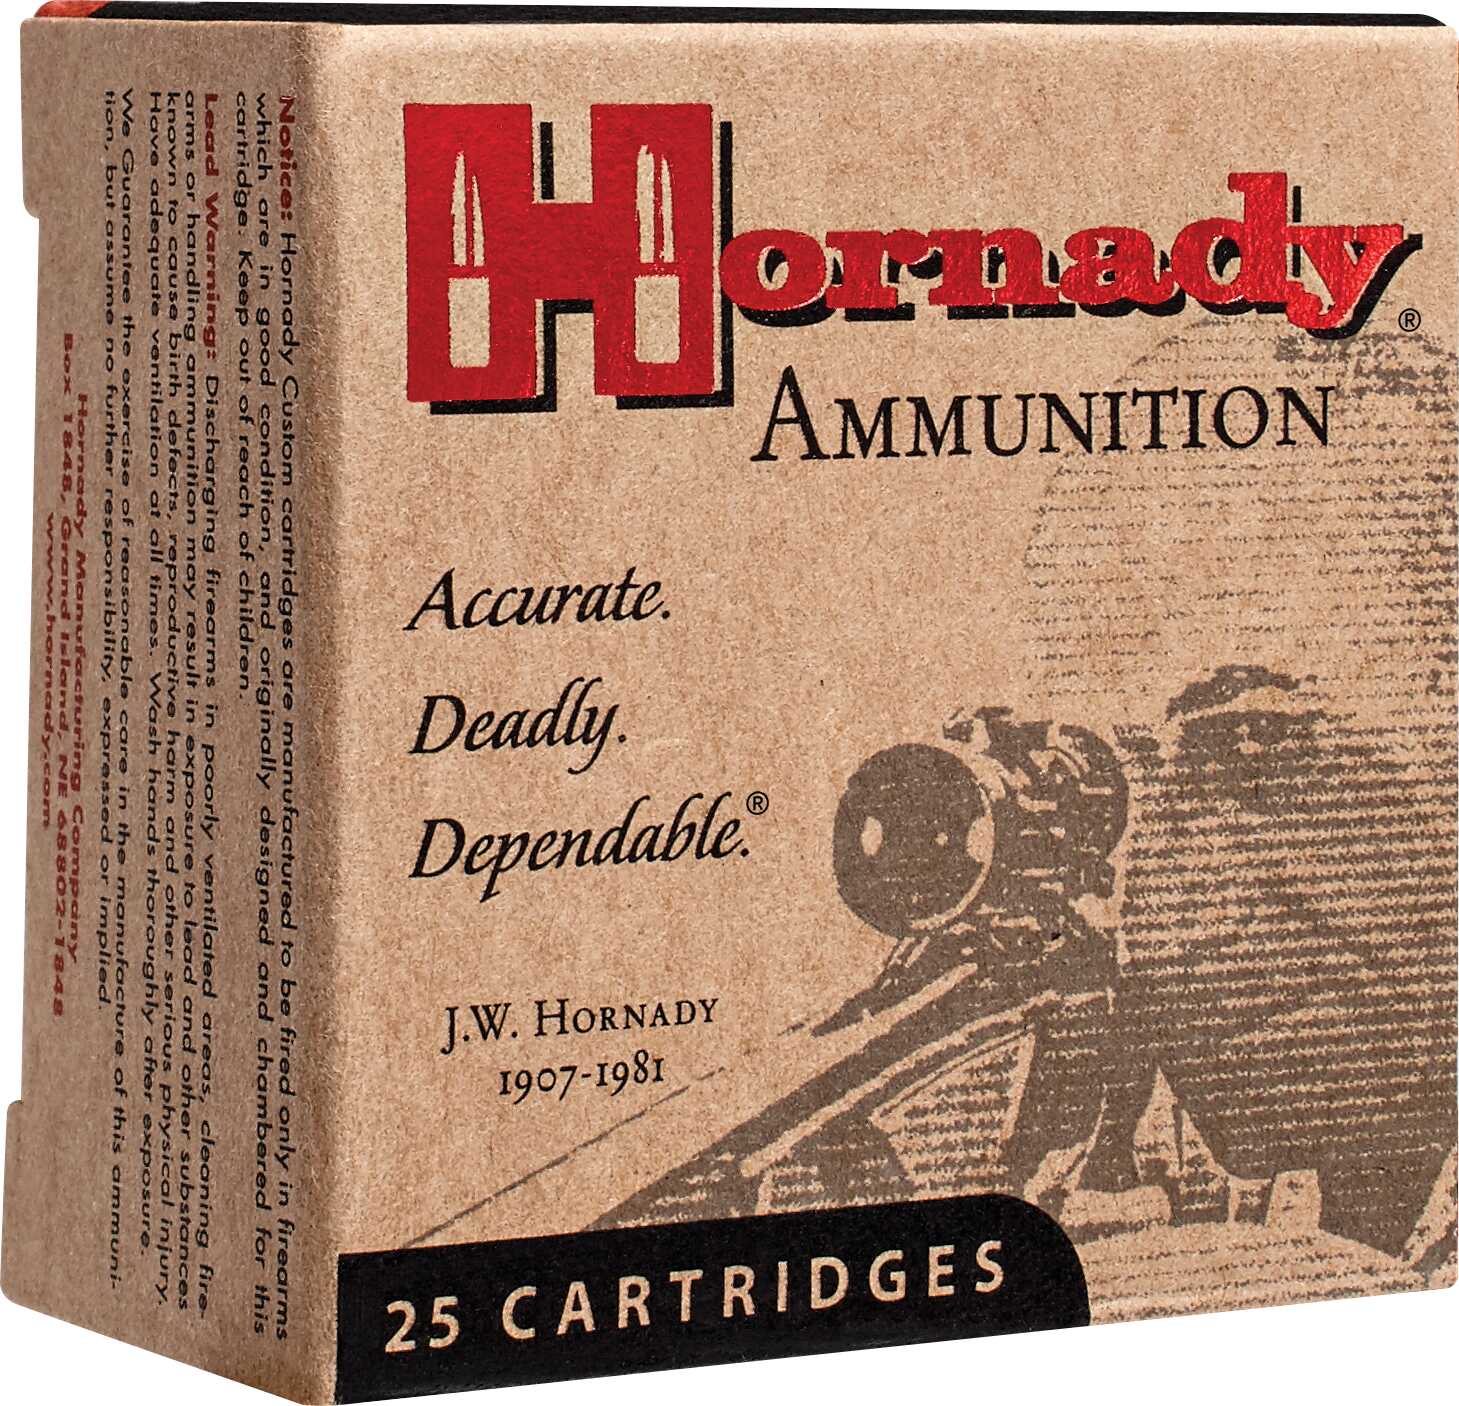 9mm Luger 147 Grain Hollow Point 25 Rounds Hornady Ammunition